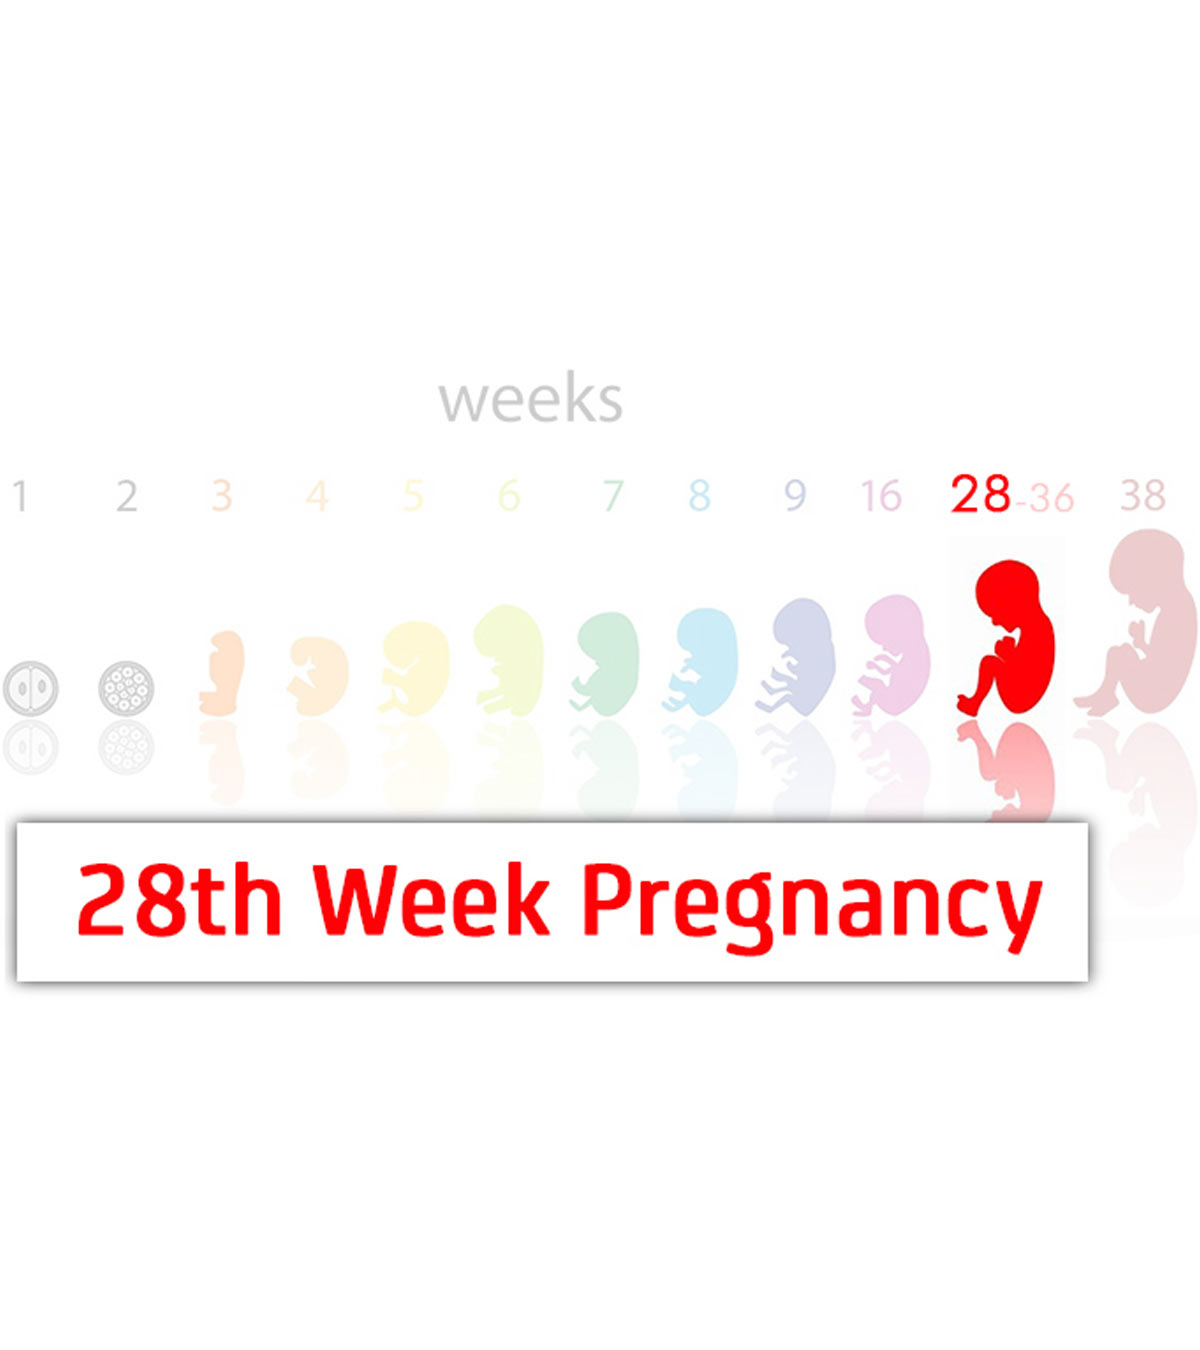 怀孕28周:症状、婴儿发育和变化